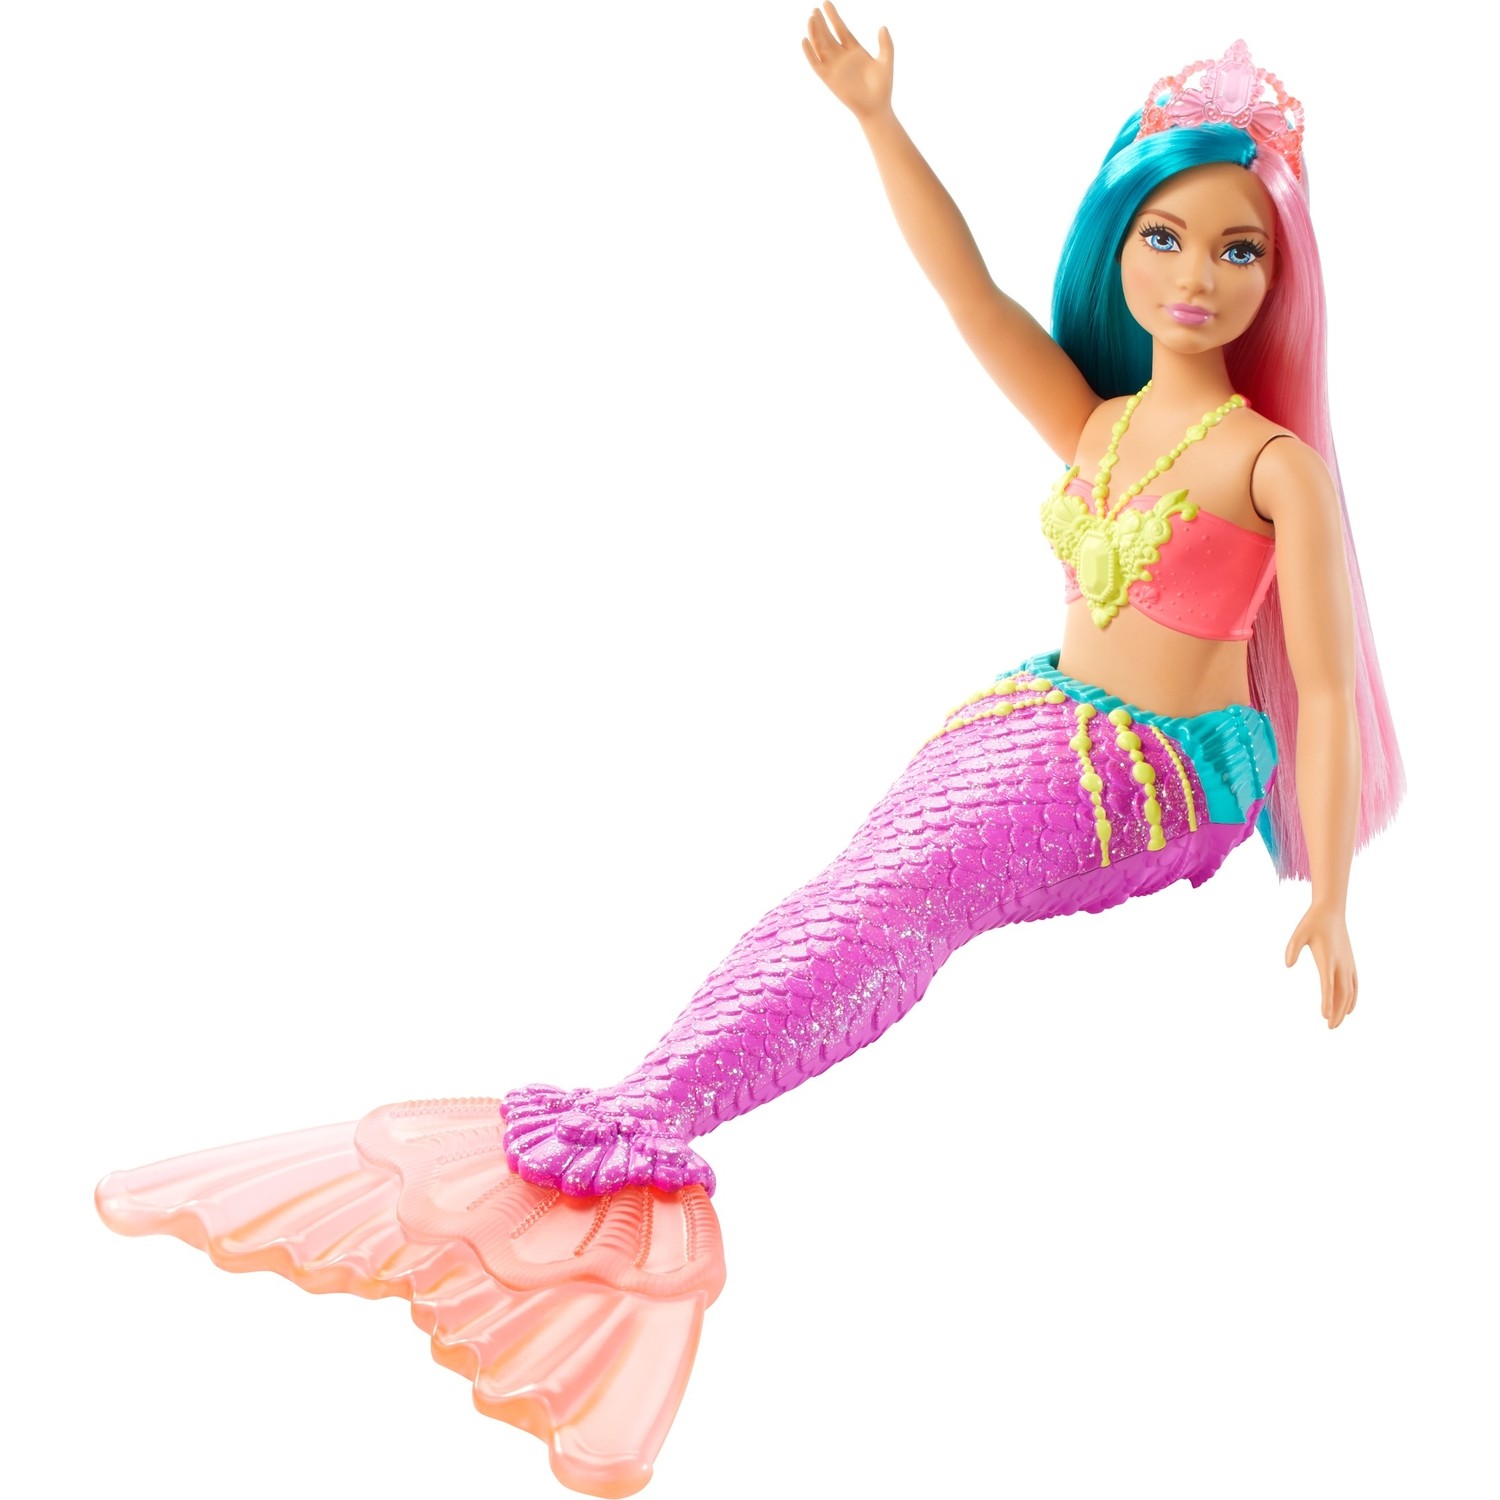 Куклы русалки Barbie Dreamtopia светлая кожа, синие, розовые волосы GJK11